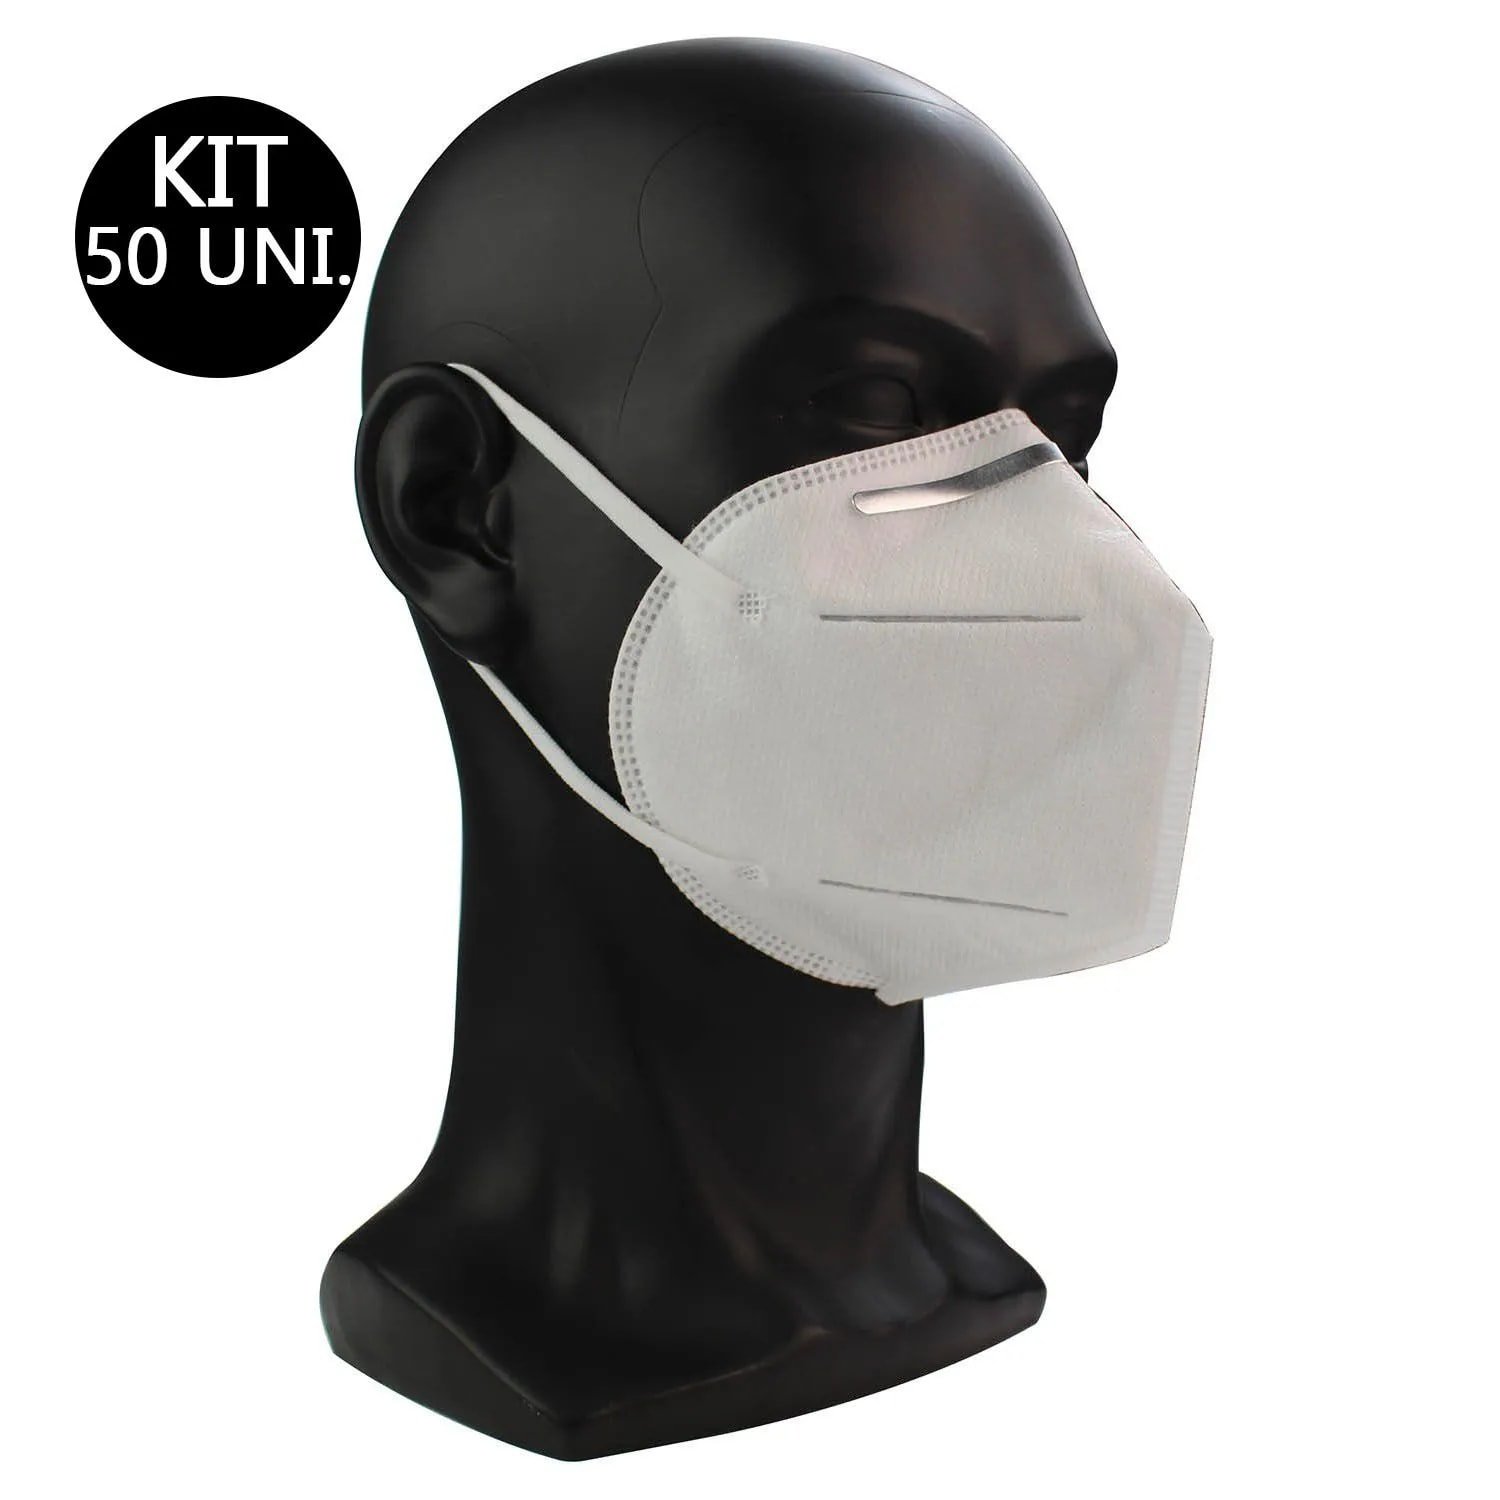 Mascara Respiratoria KN95 Kit 50 Uni Proteção PFF2 Respirador EPI N95 Profissional - 1